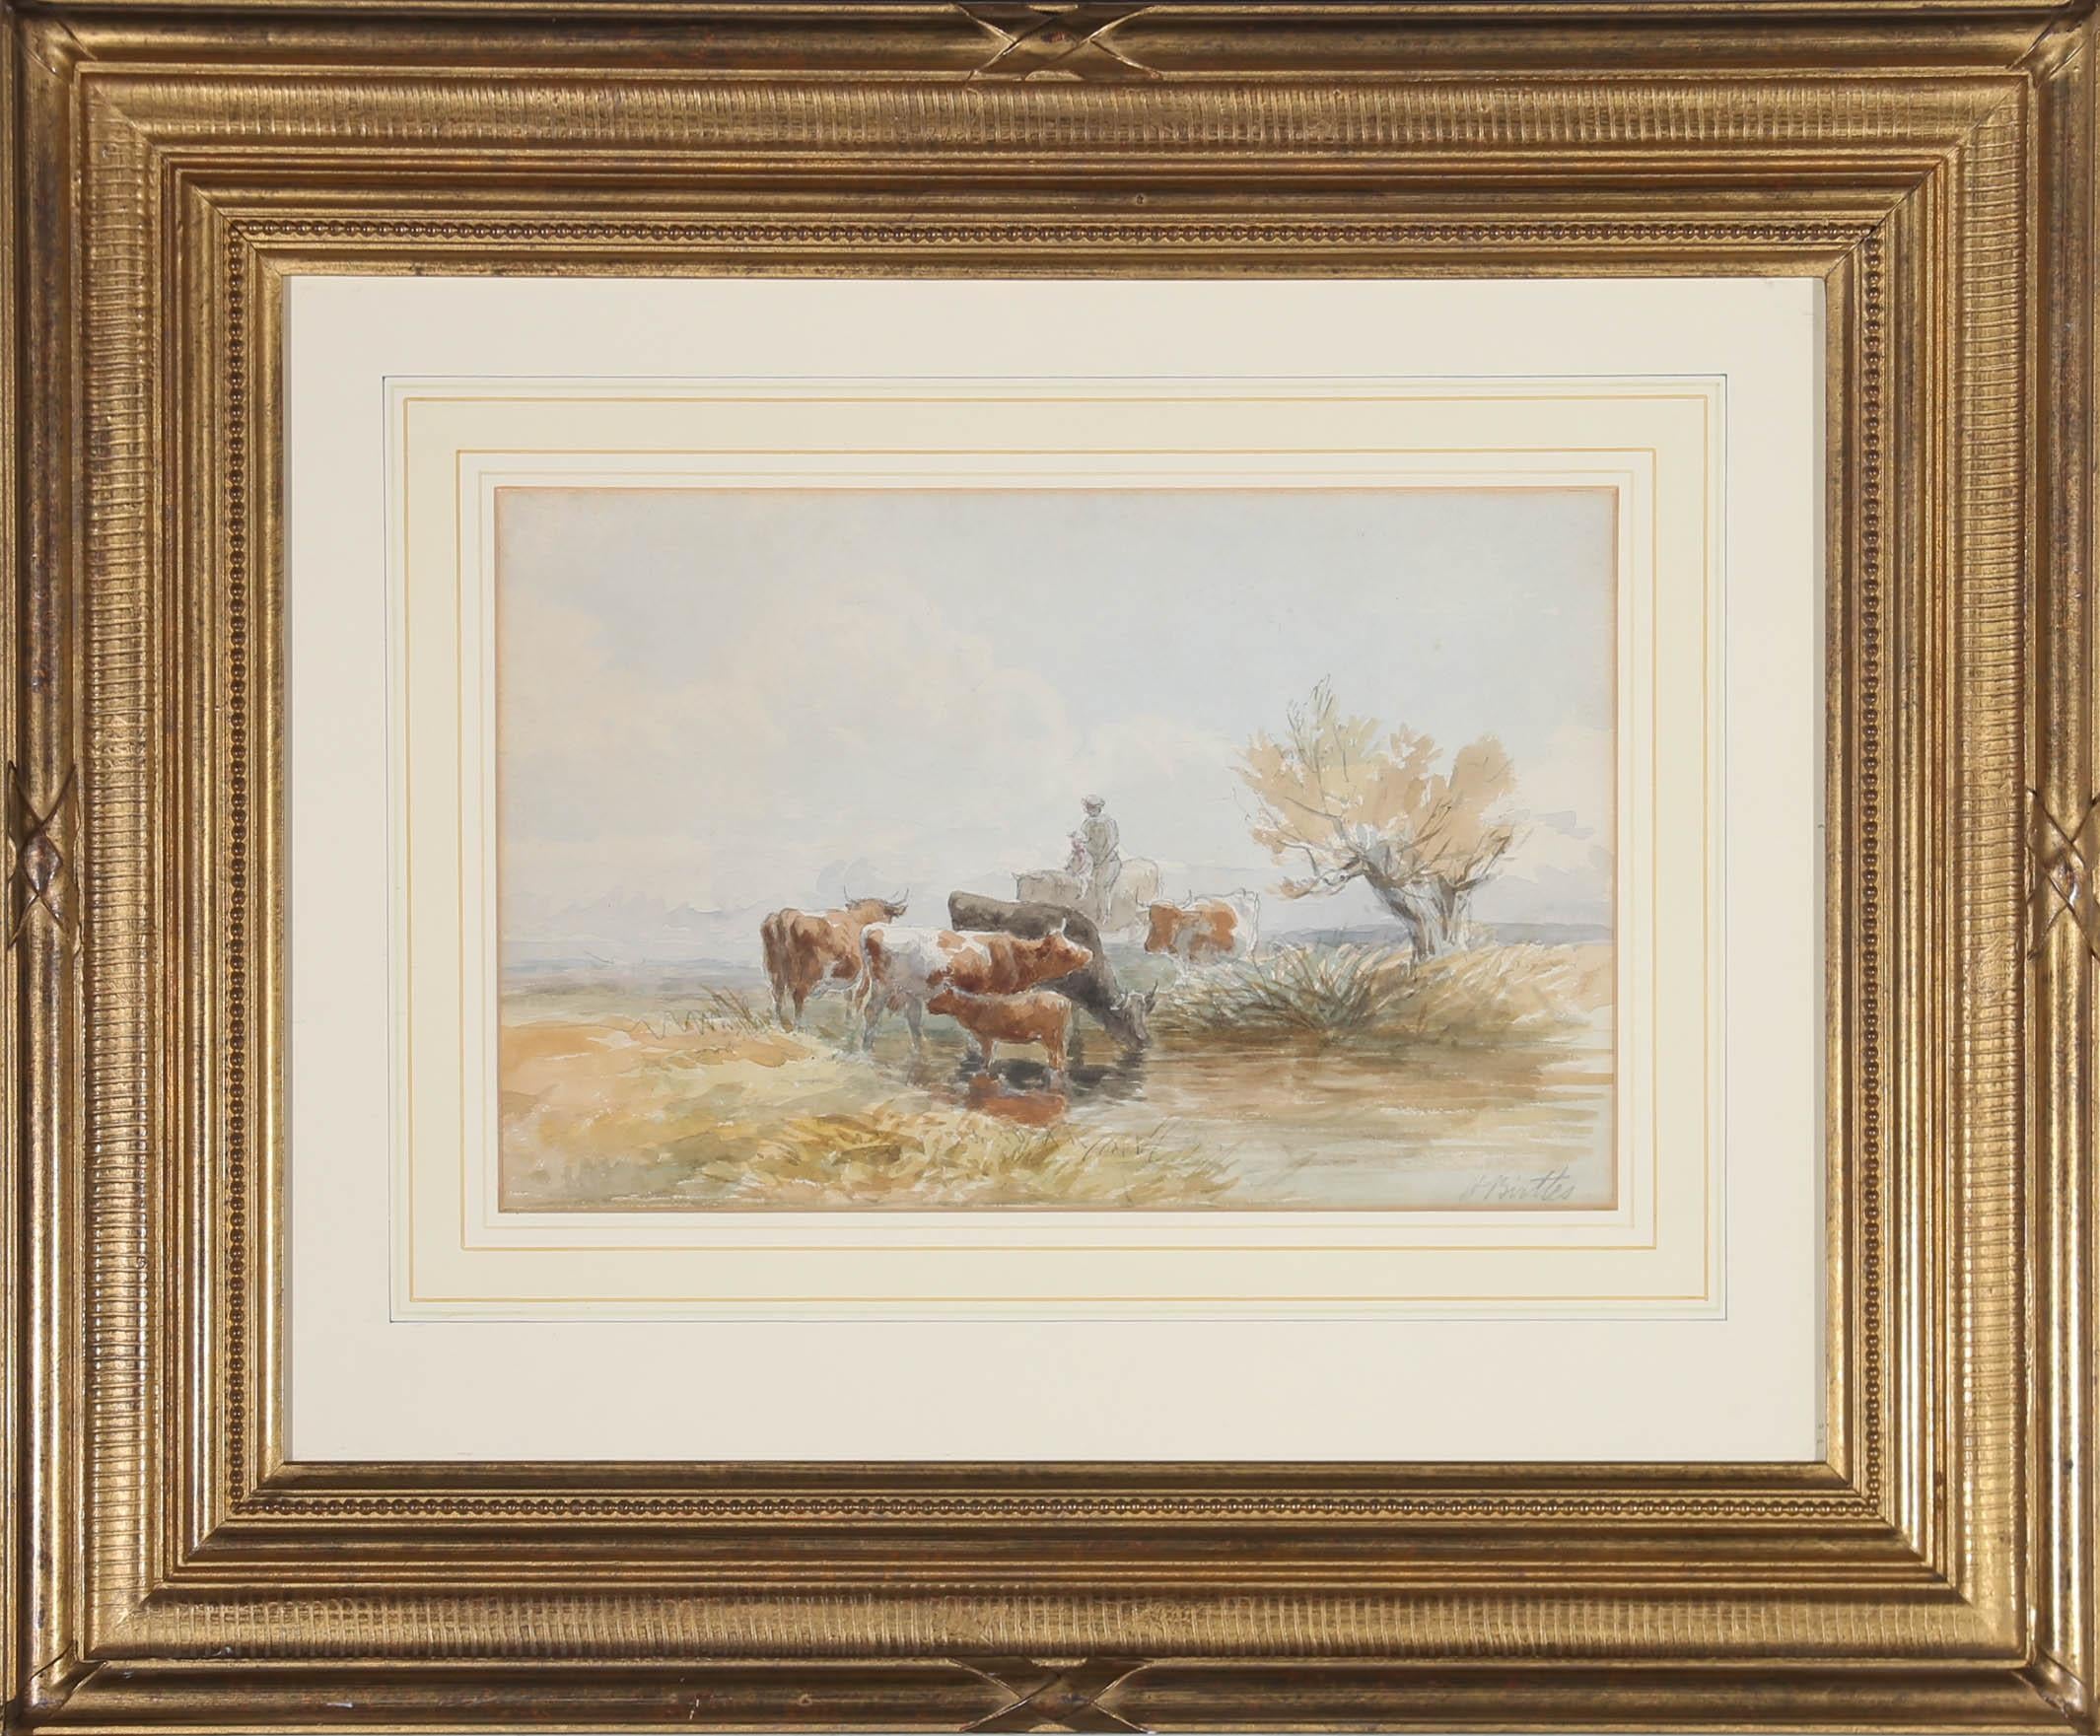 Ein einfaches Aquarell mit Bleistiftdetails, das Henry Birtles RA (1838-1907) zugeschrieben wird. Es zeigt eine kleine Gruppe von Rindern, die in einer weiten, offenen Landschaft aus einem Fluss trinken. In der Mitte der Komposition sind ein